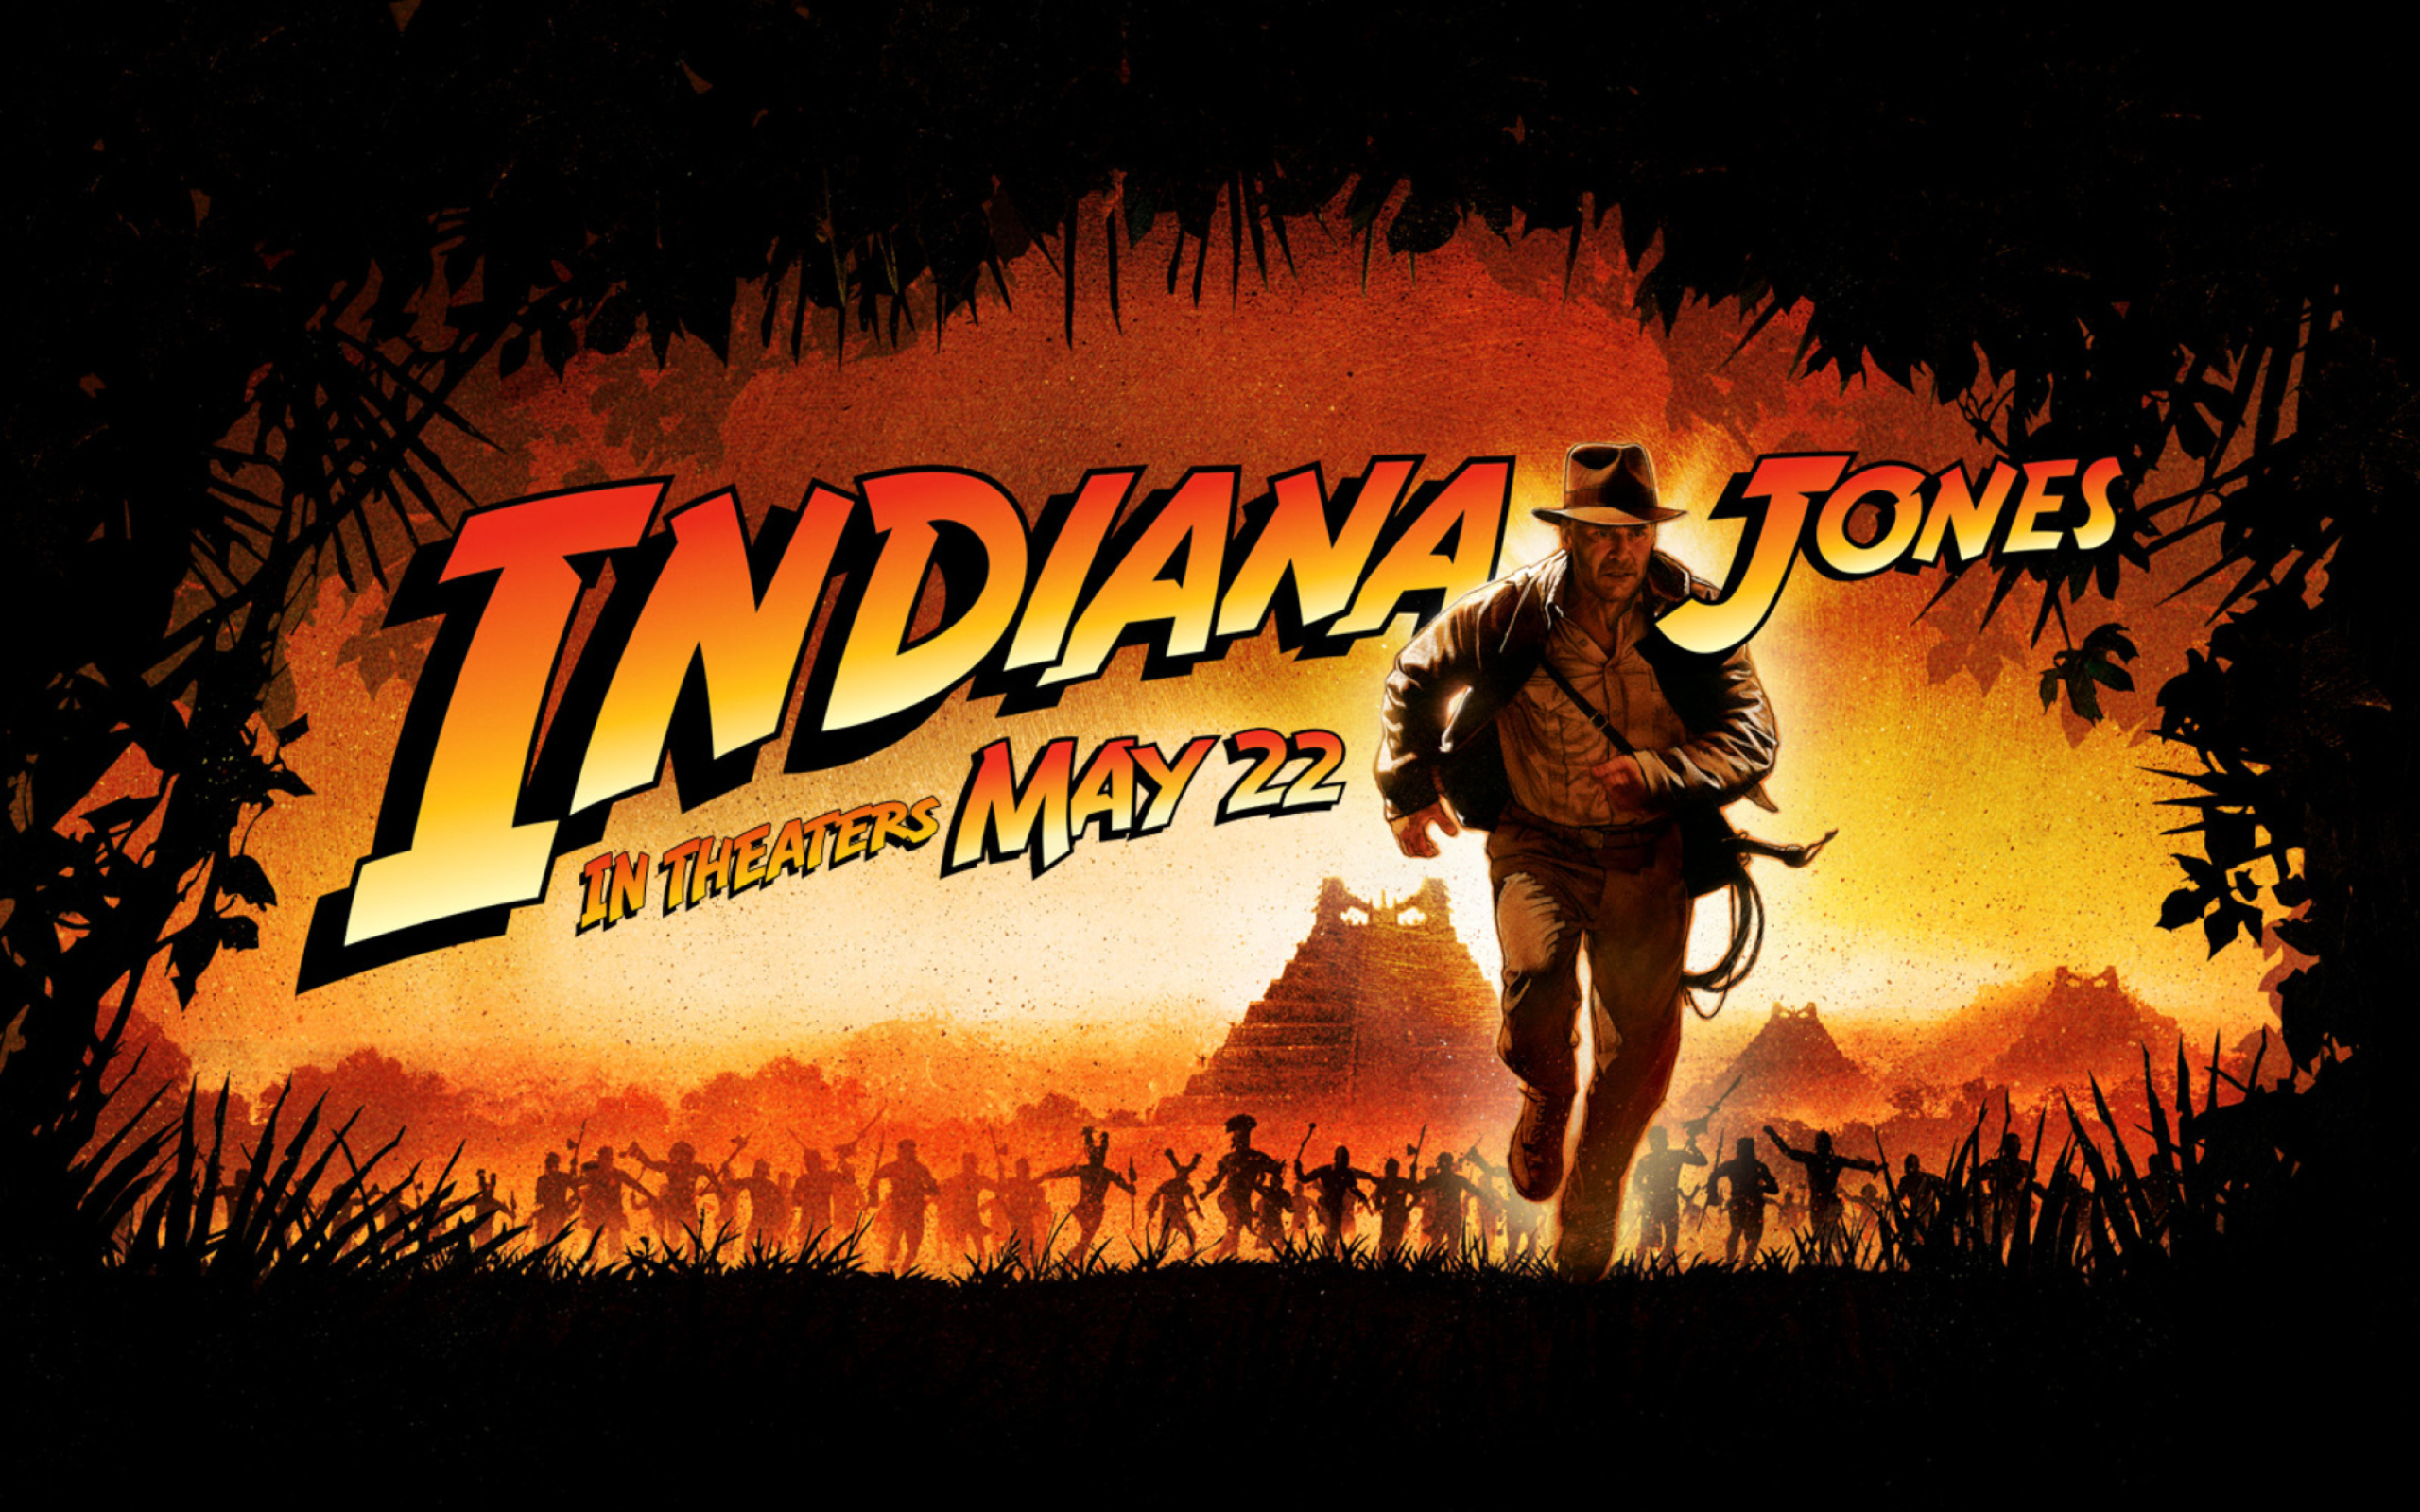 Das Indiana Jones Wallpaper 2560x1600